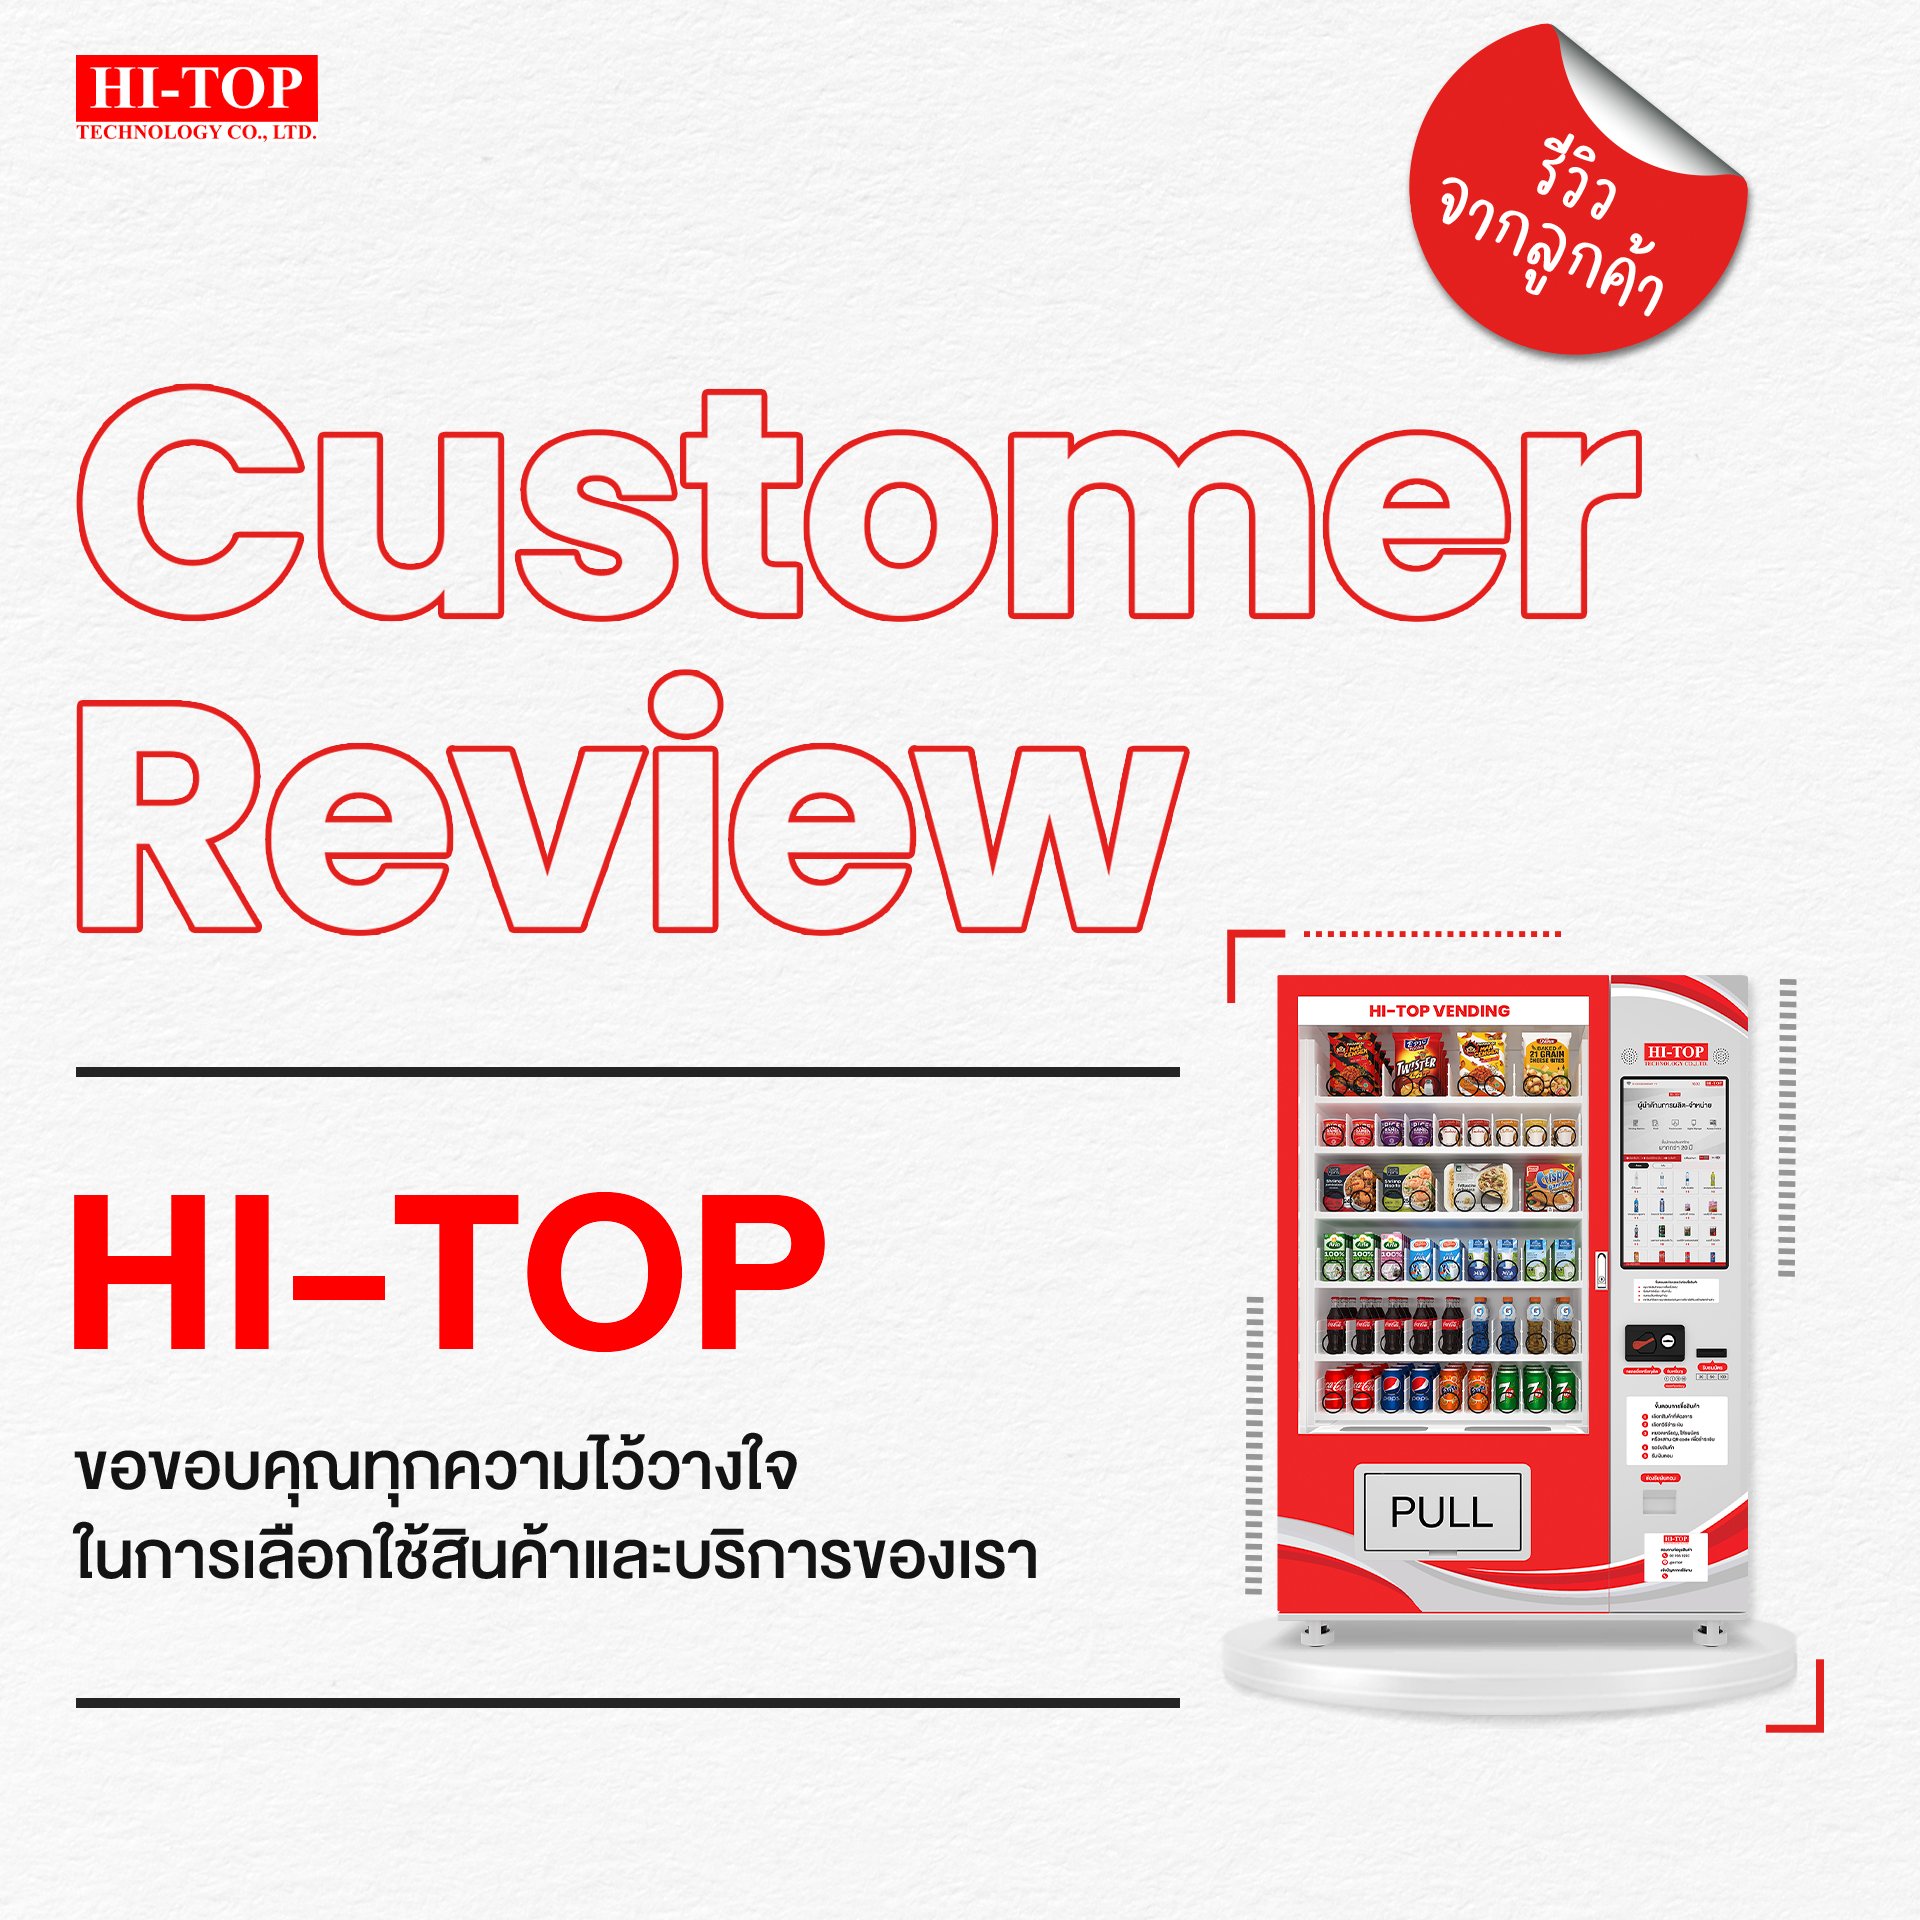 รวมภาพตัวอย่าง ตู้ Vending Machine จากลูกค้า HI-TOP